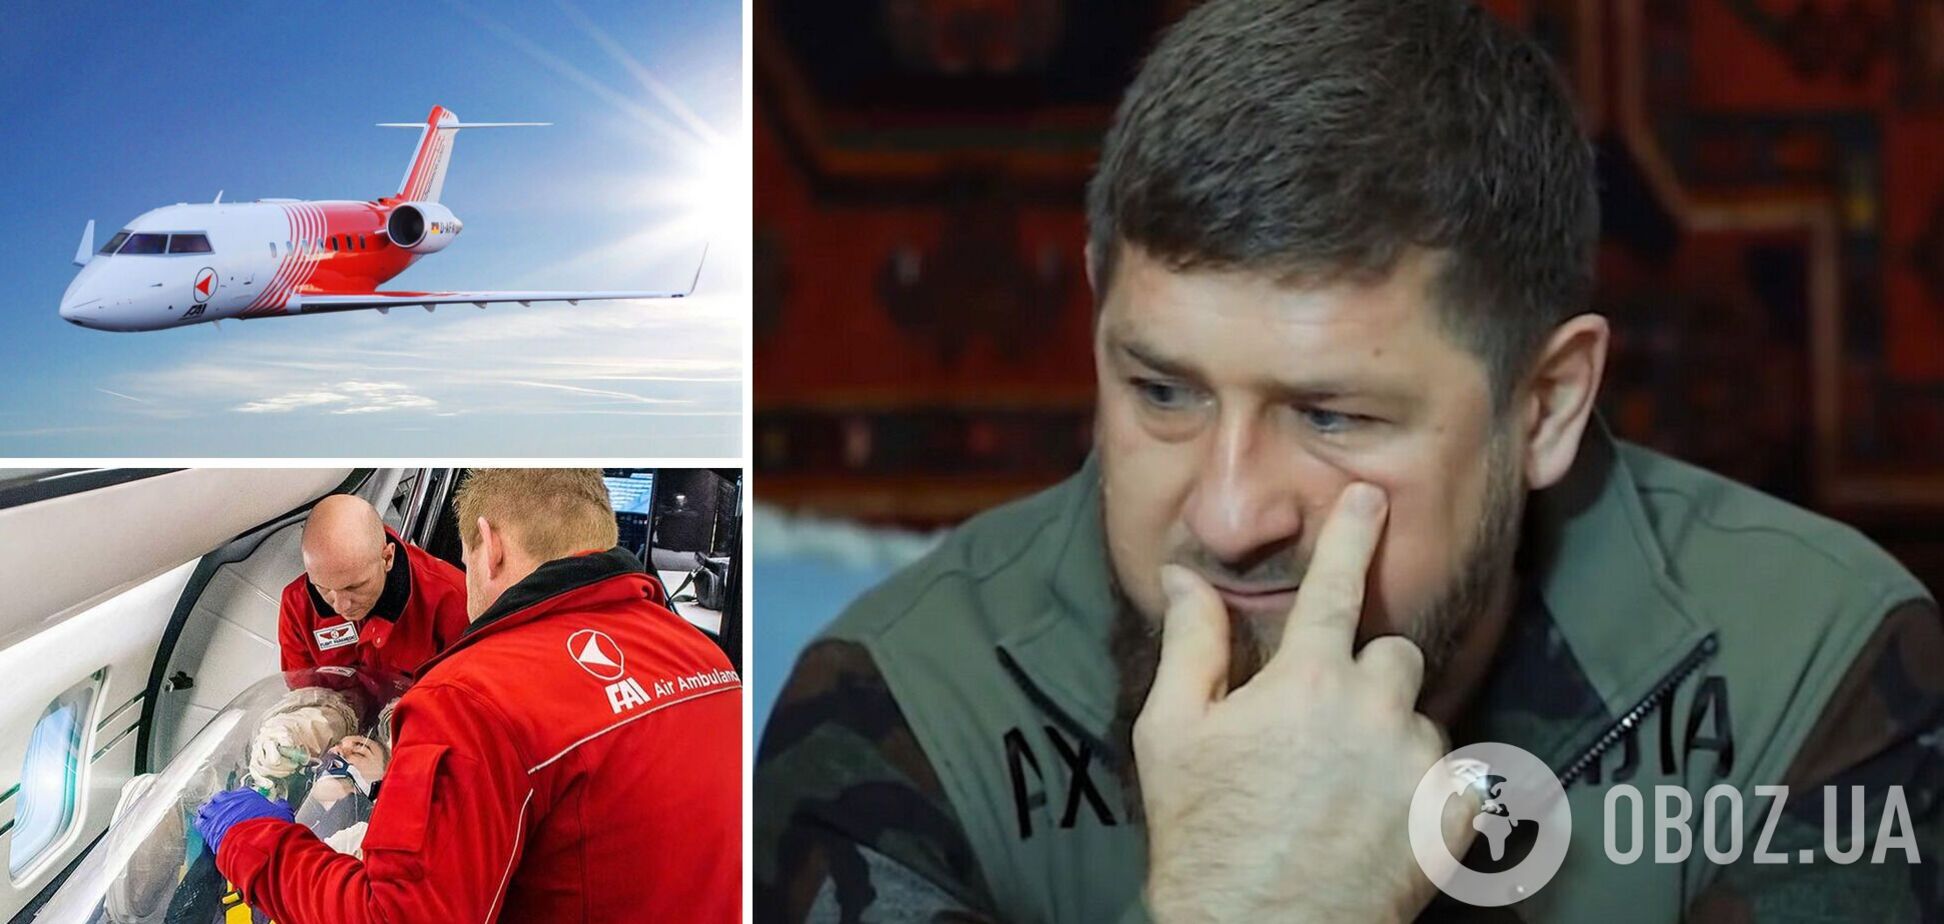 ЗМІ зафіксували дивний авіарейс з Москви до Ганновера: на борту міг бути Кадиров